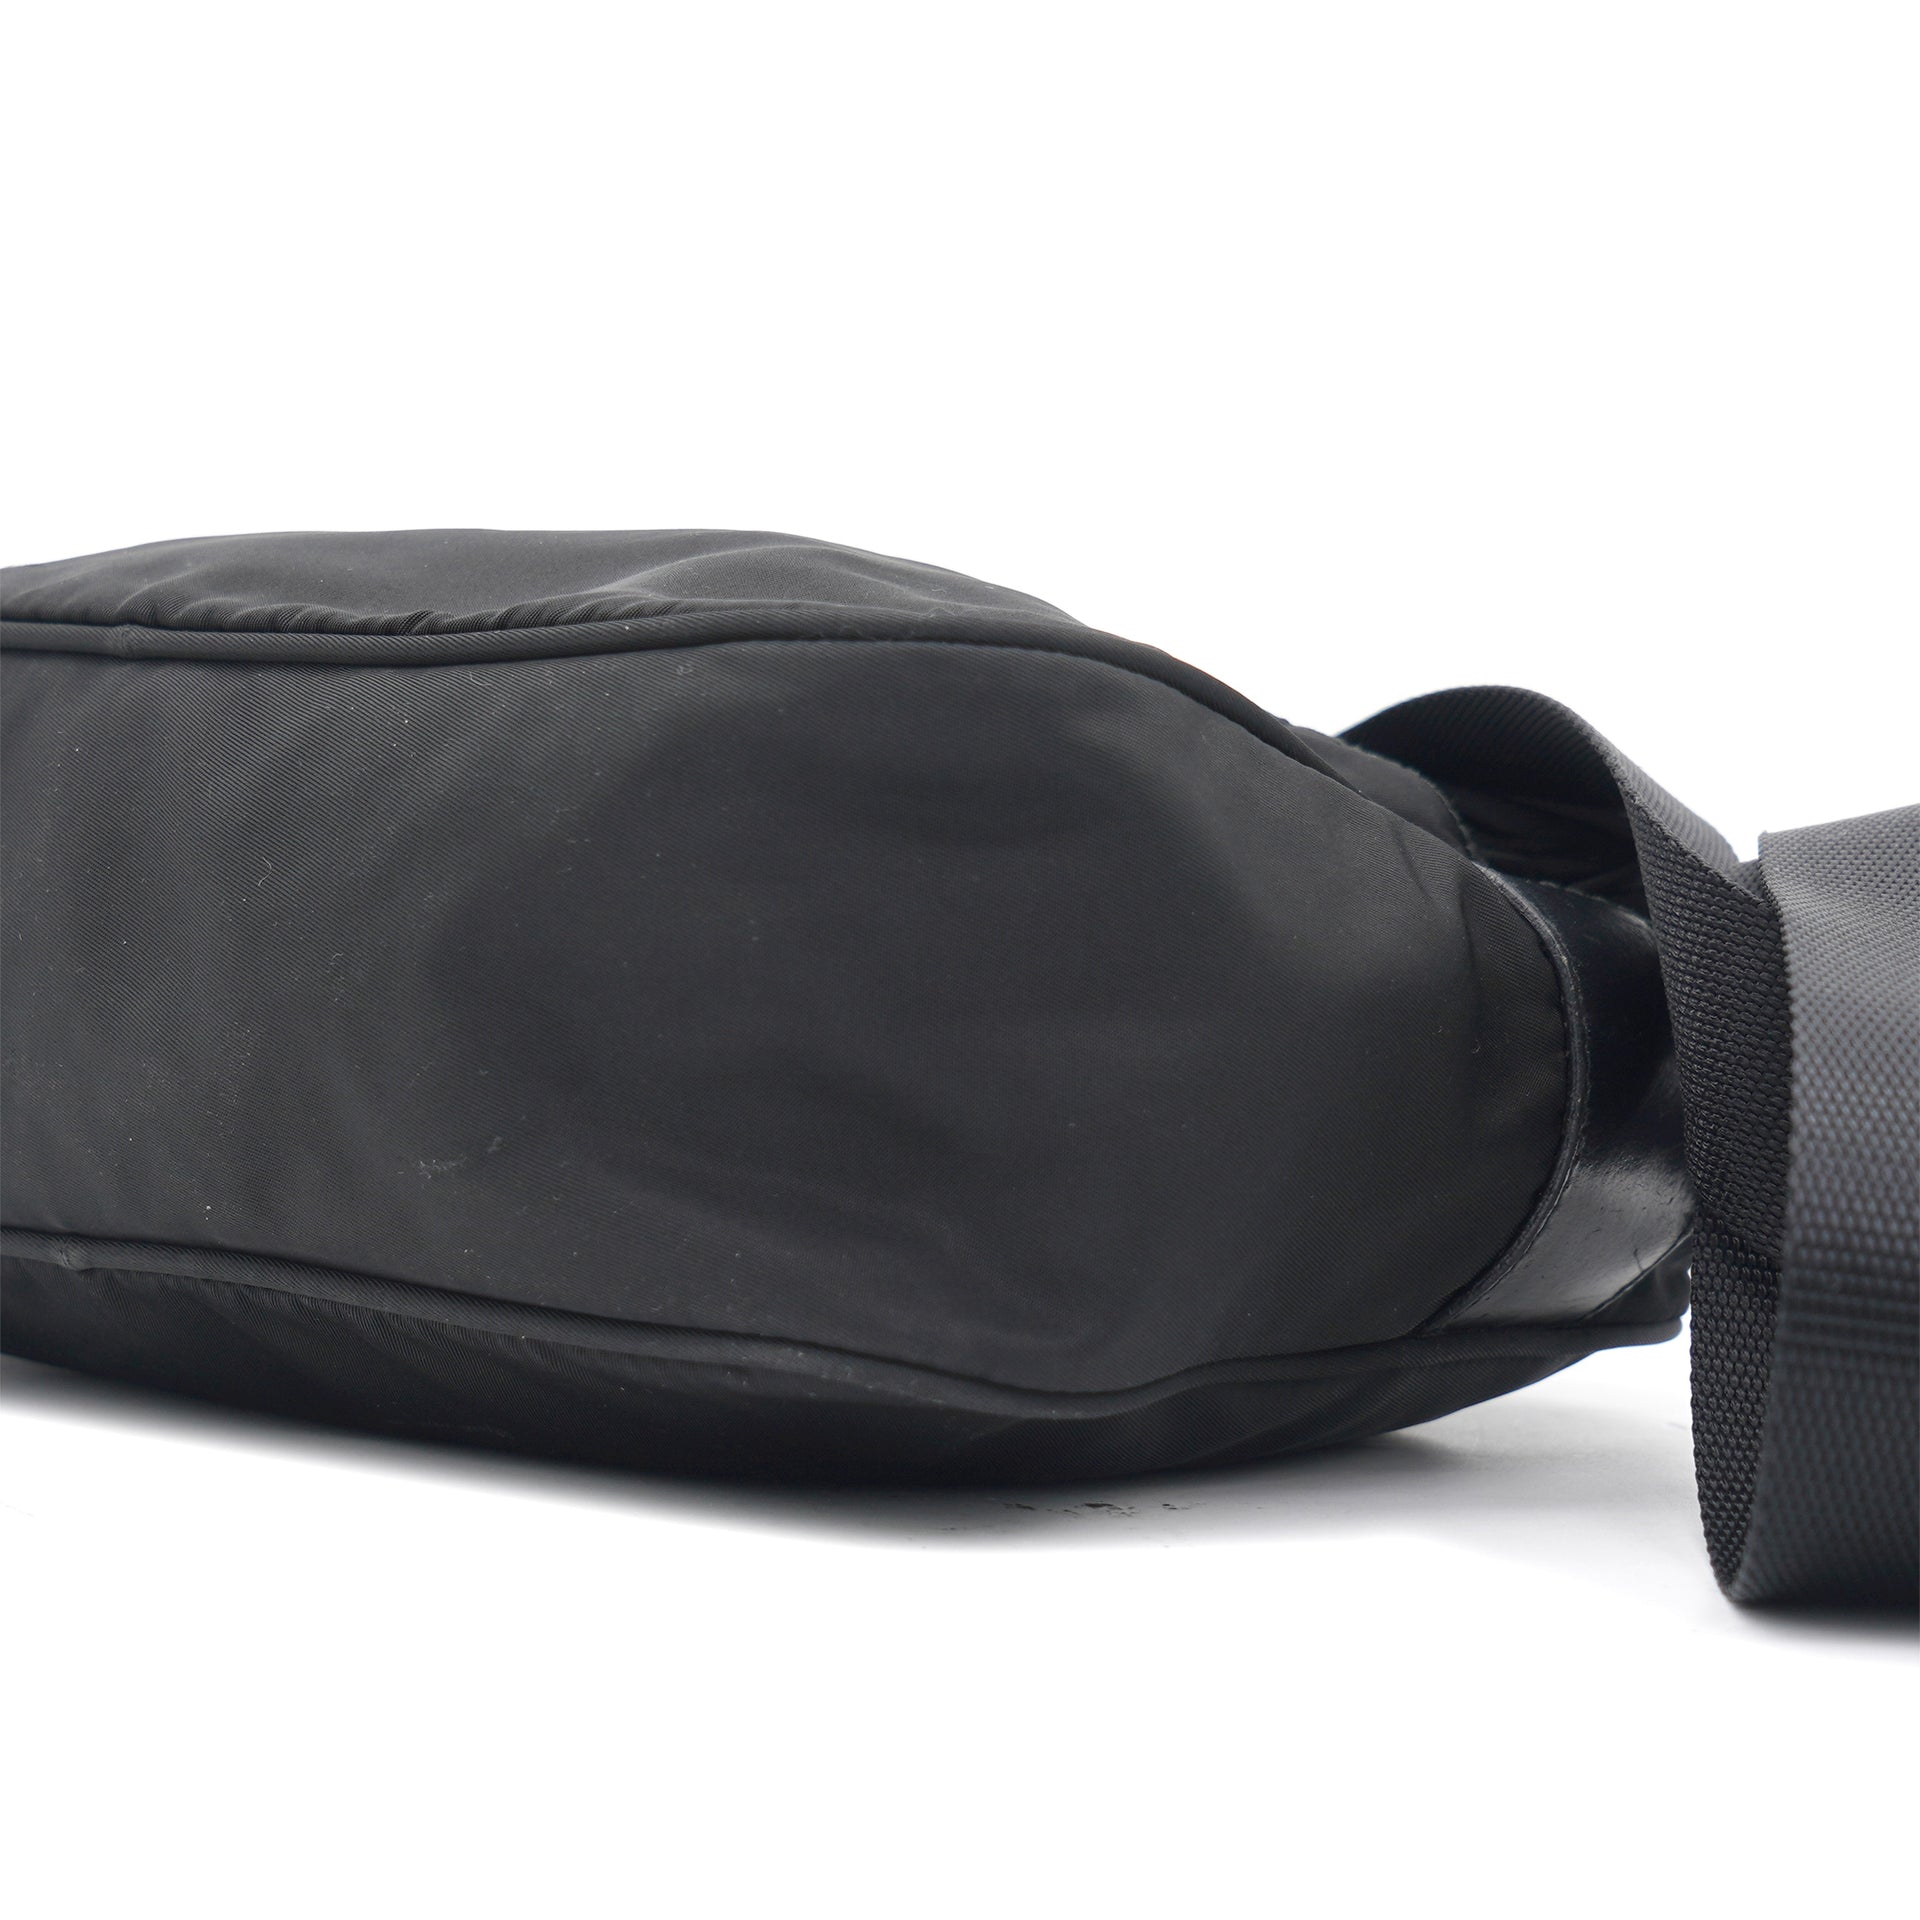 Re-Nylon Black shoulder bag